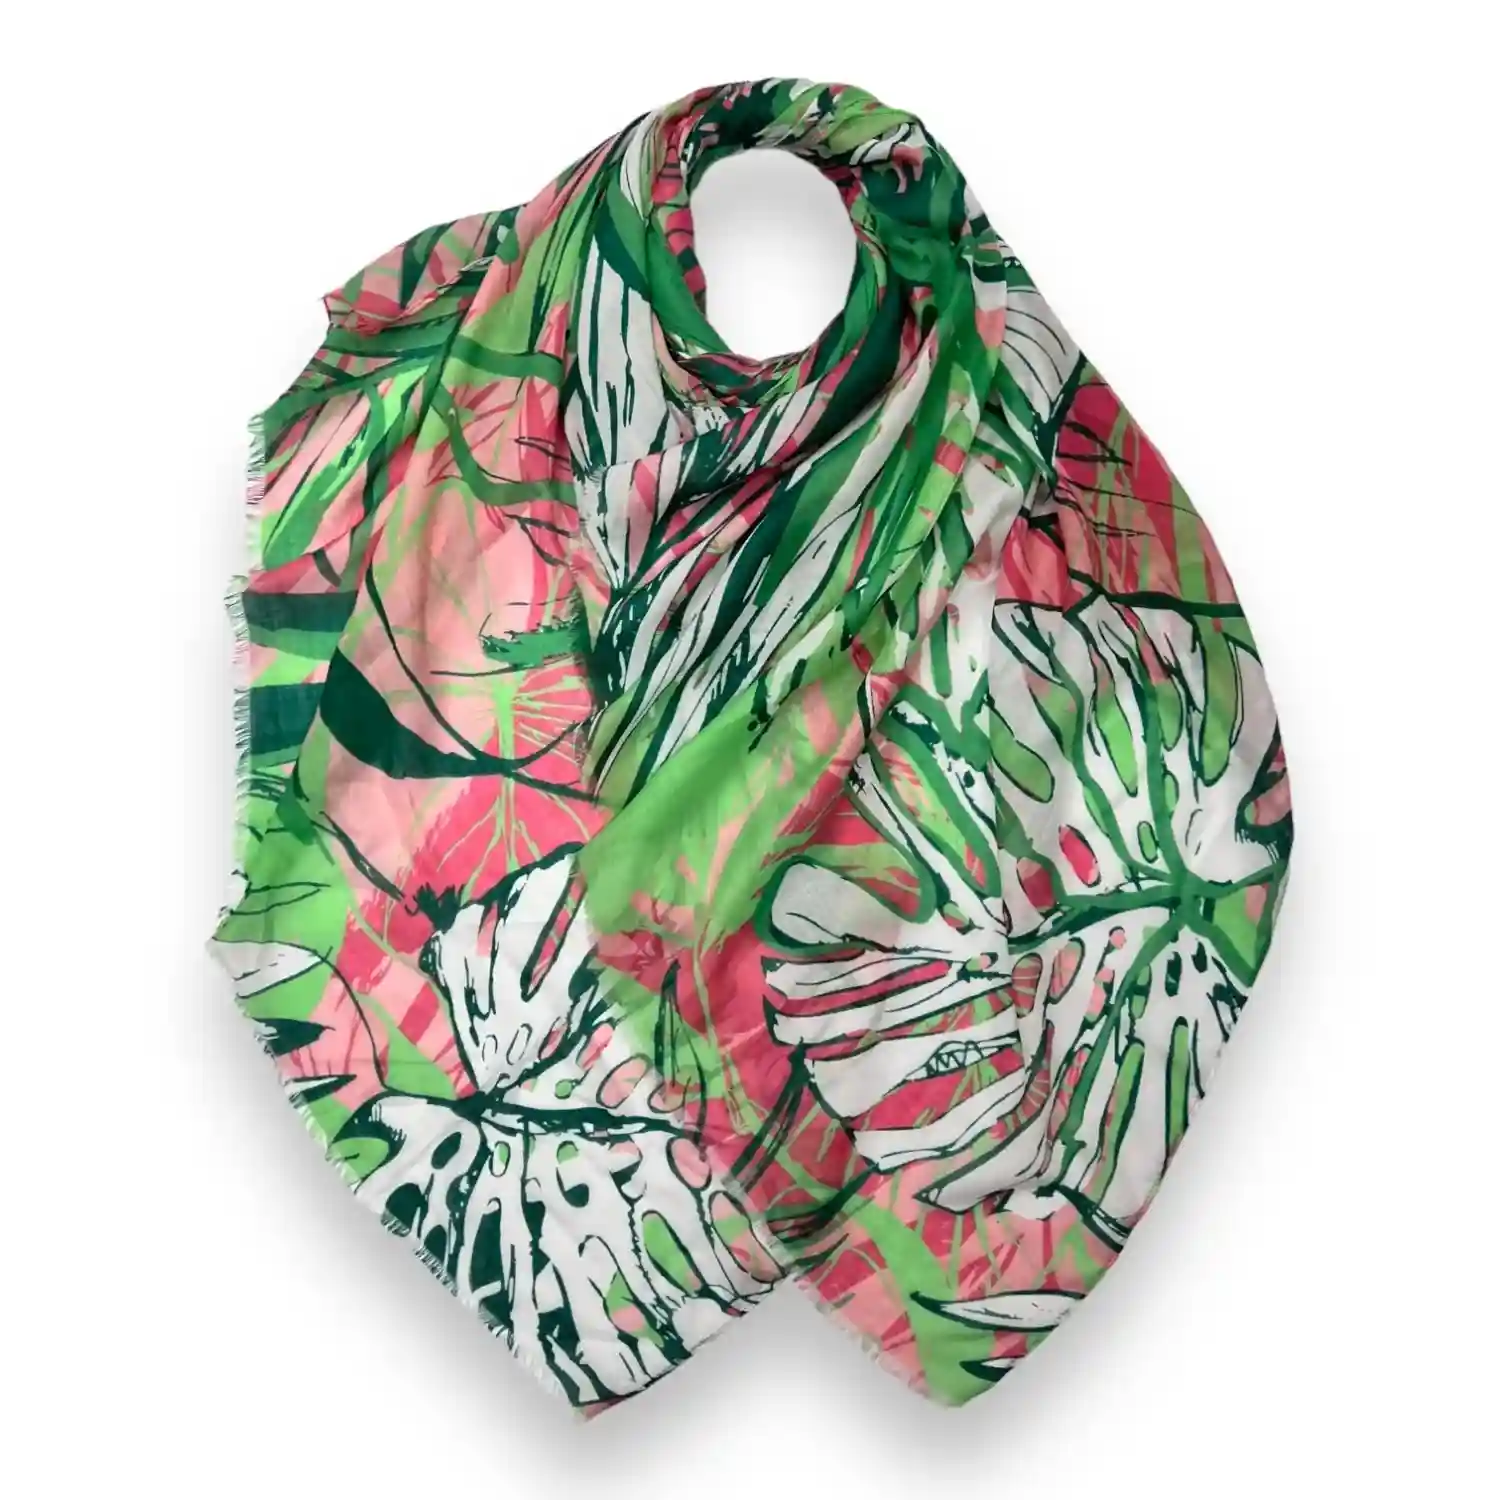 Tørklæde med palmeblade som motiv i grøn, pink, lyserød og hvid baggrund